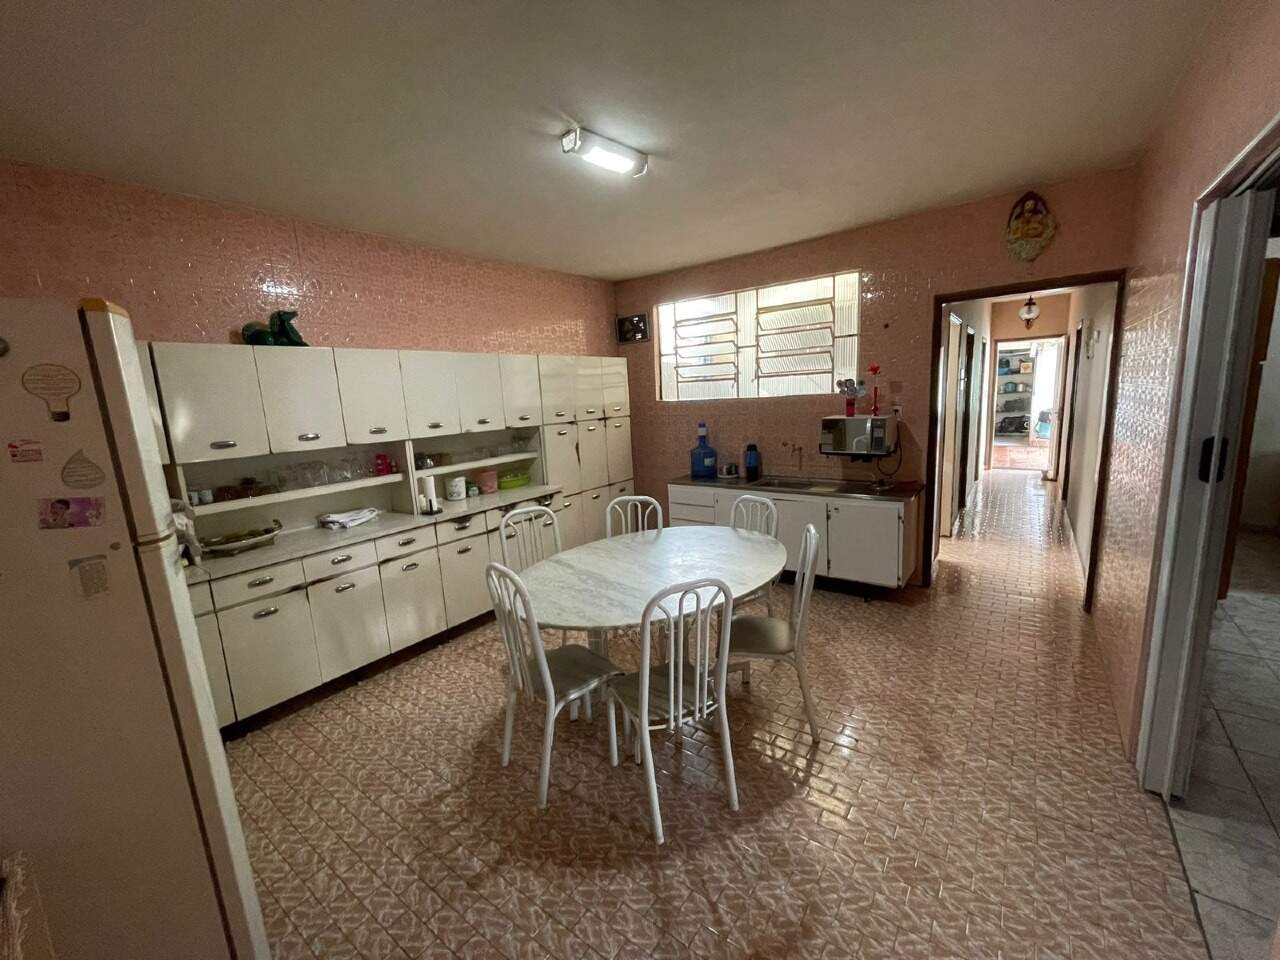 Casa à venda, 4 quartos, 1 vaga, no bairro Nova Piracicaba em Piracicaba - SP